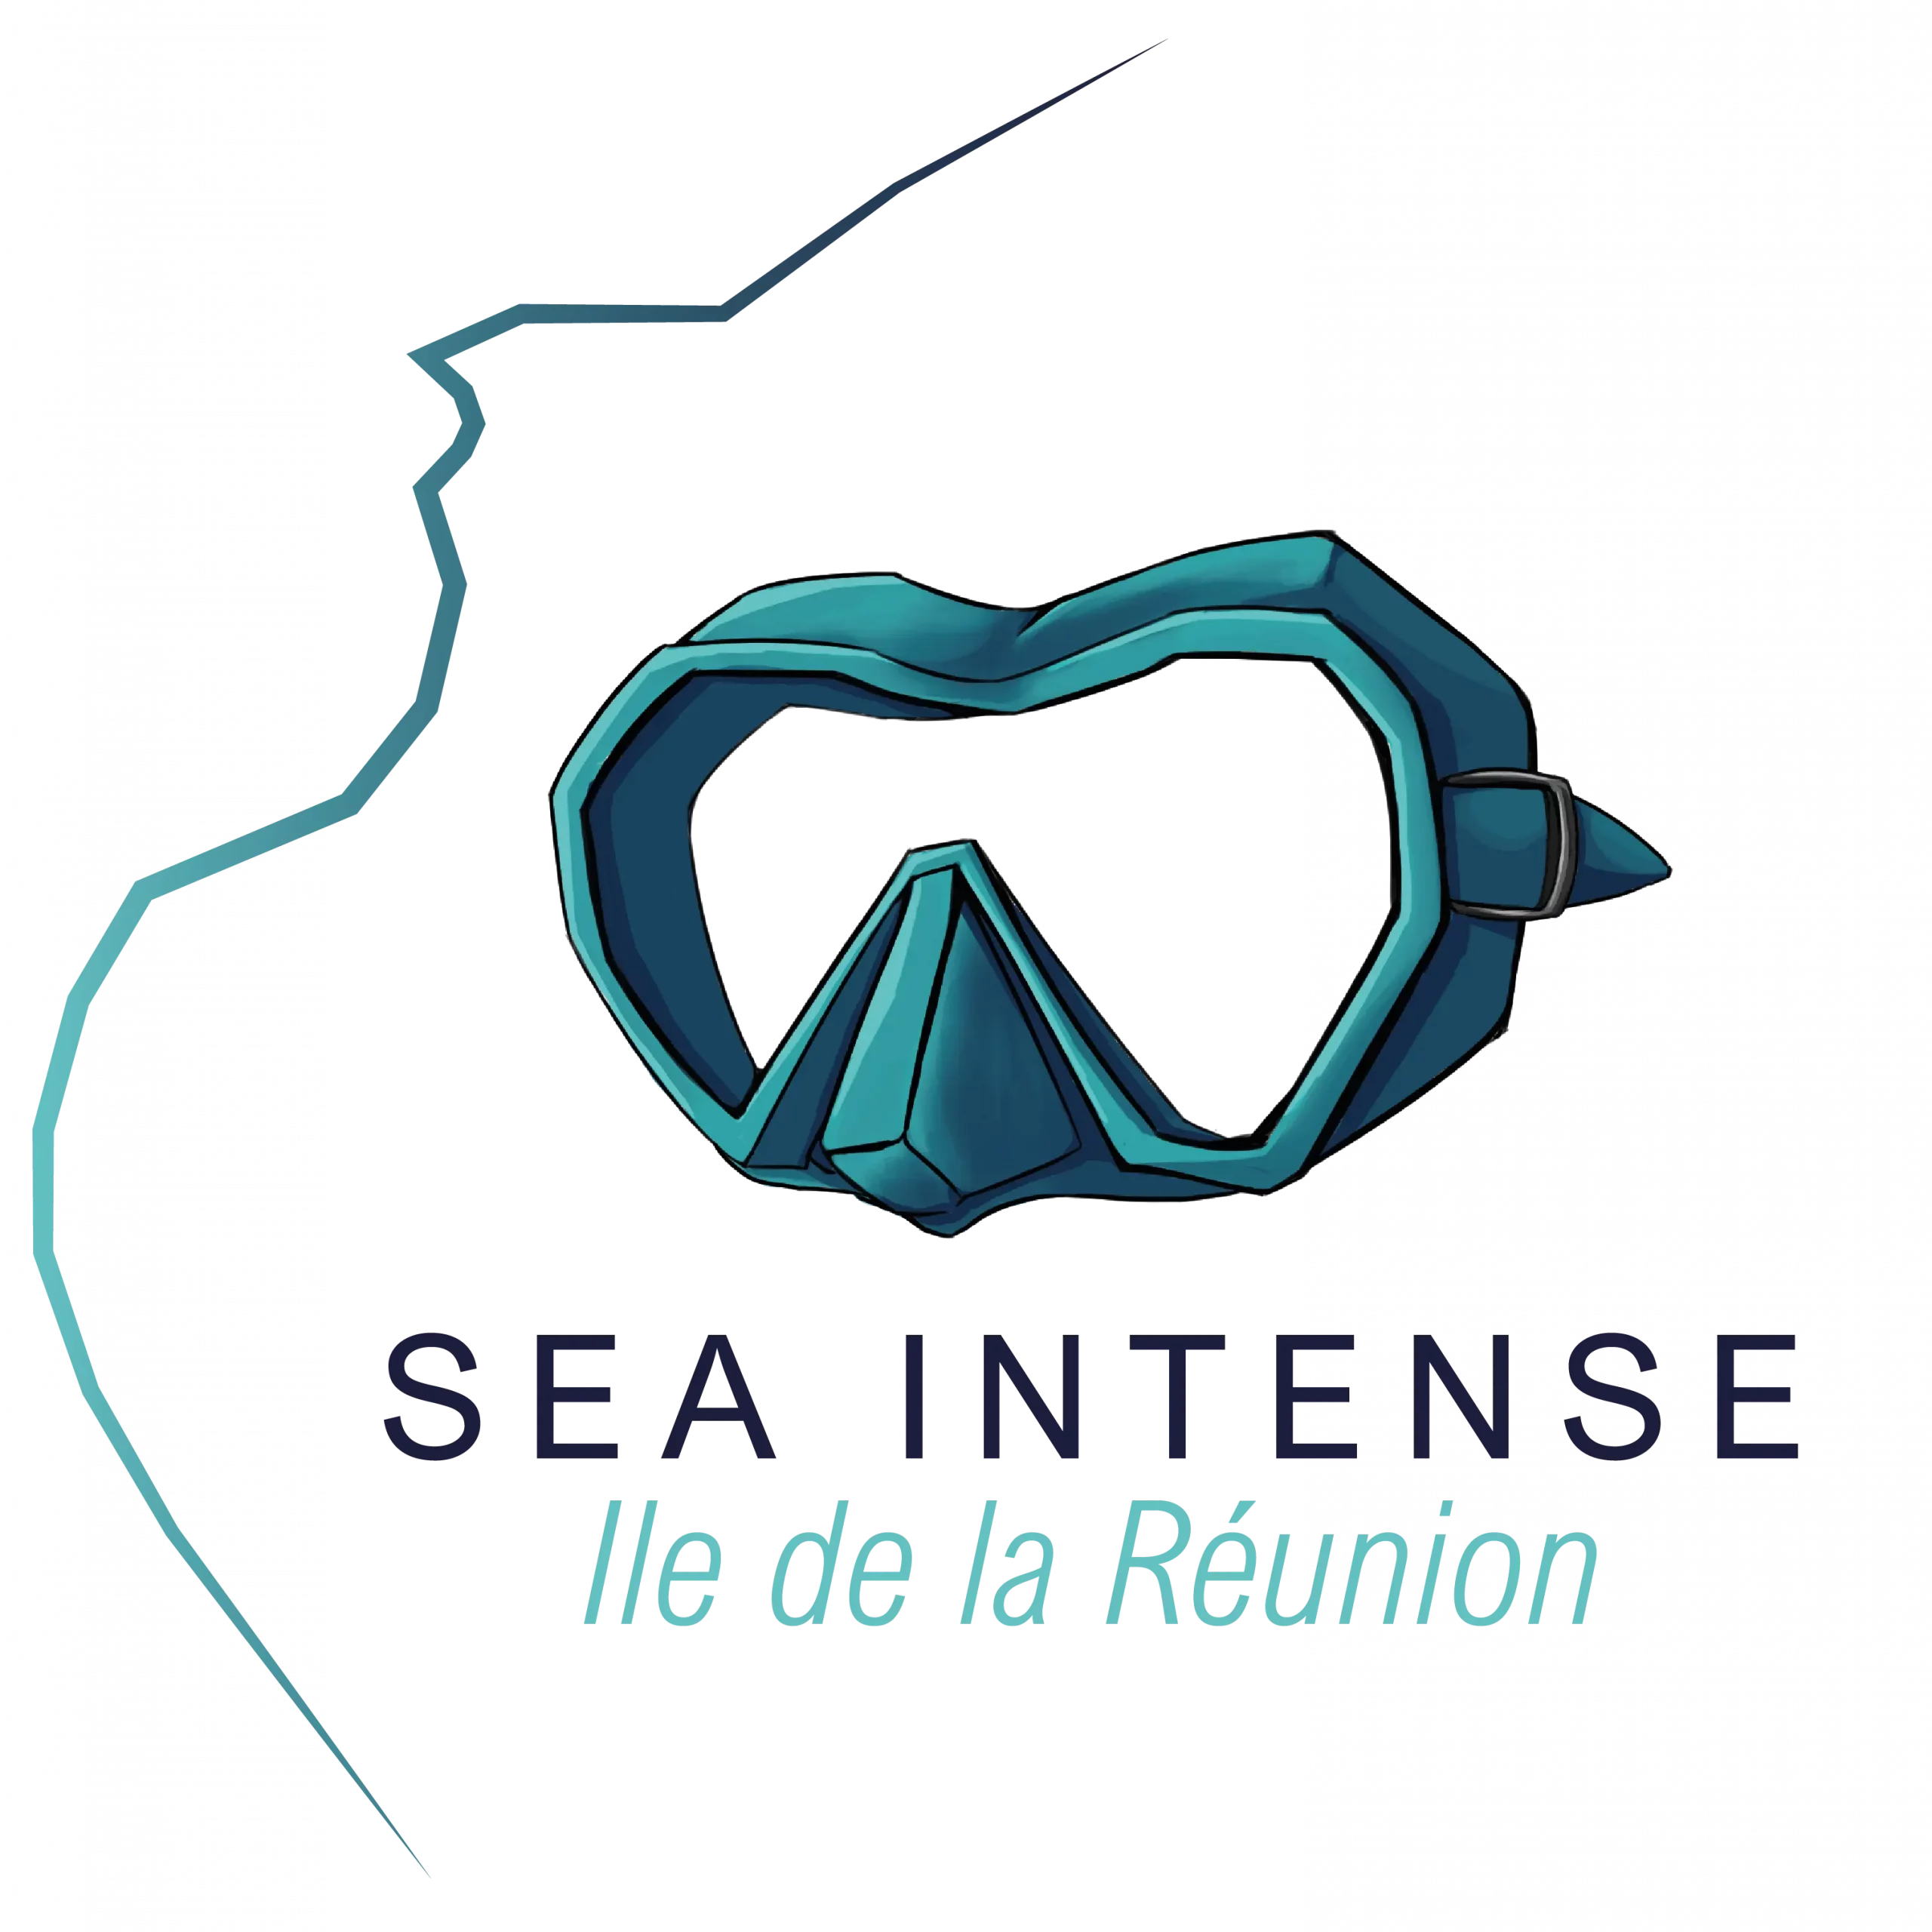 Logo de l'entreprise Sea Intense basé à la Réunion et spécialisé dans les excursions de plongée sous-marine et l'observation des cétacés.